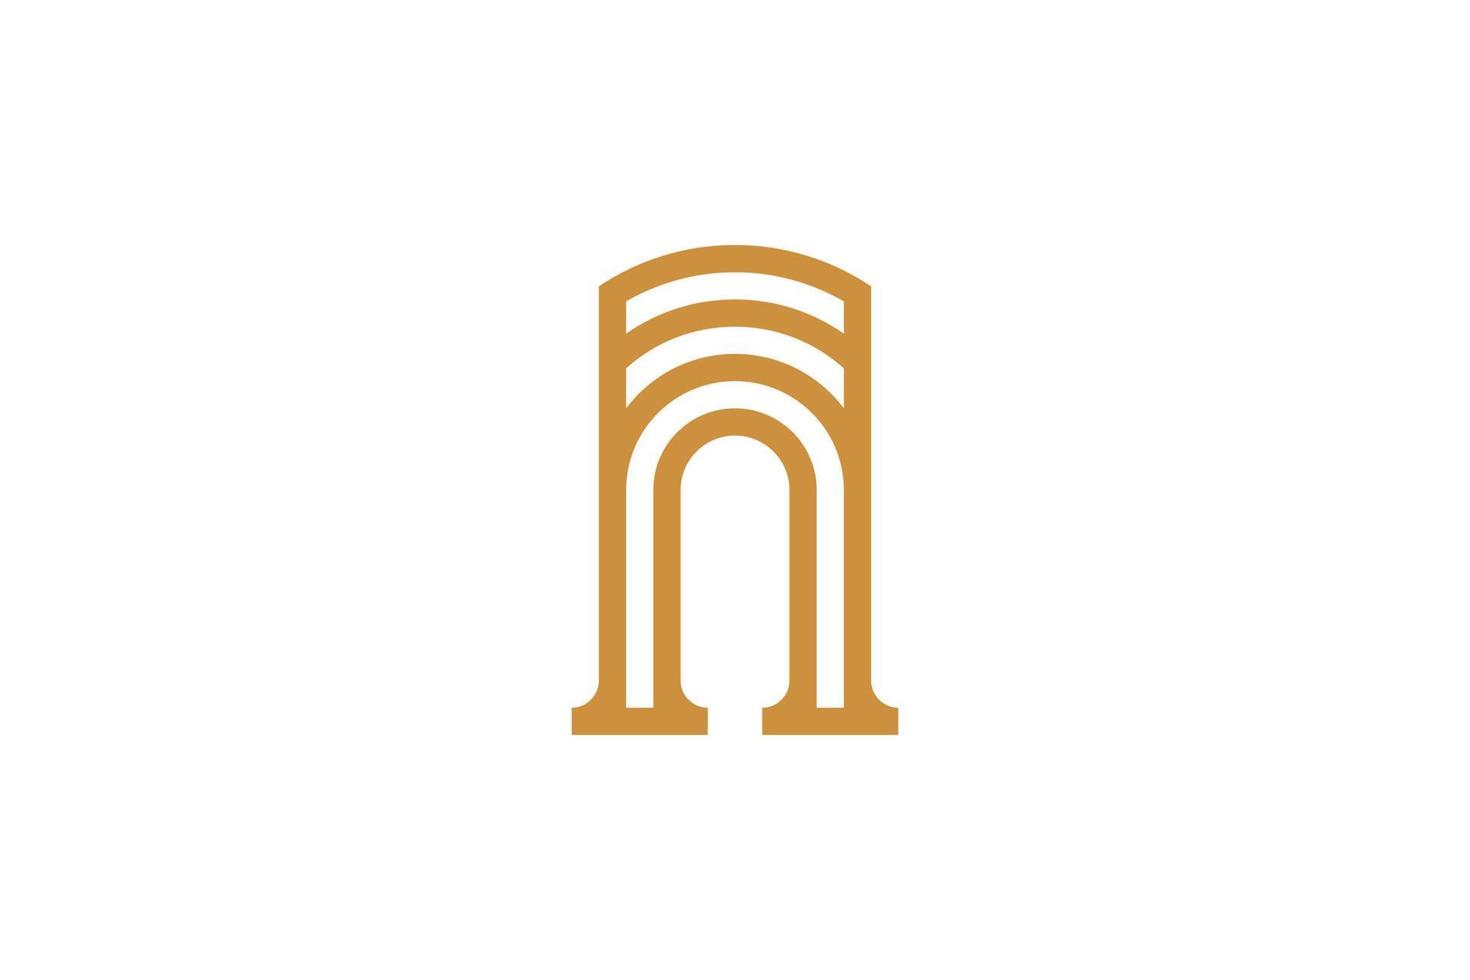 Monoline Style N Letter Logo vector